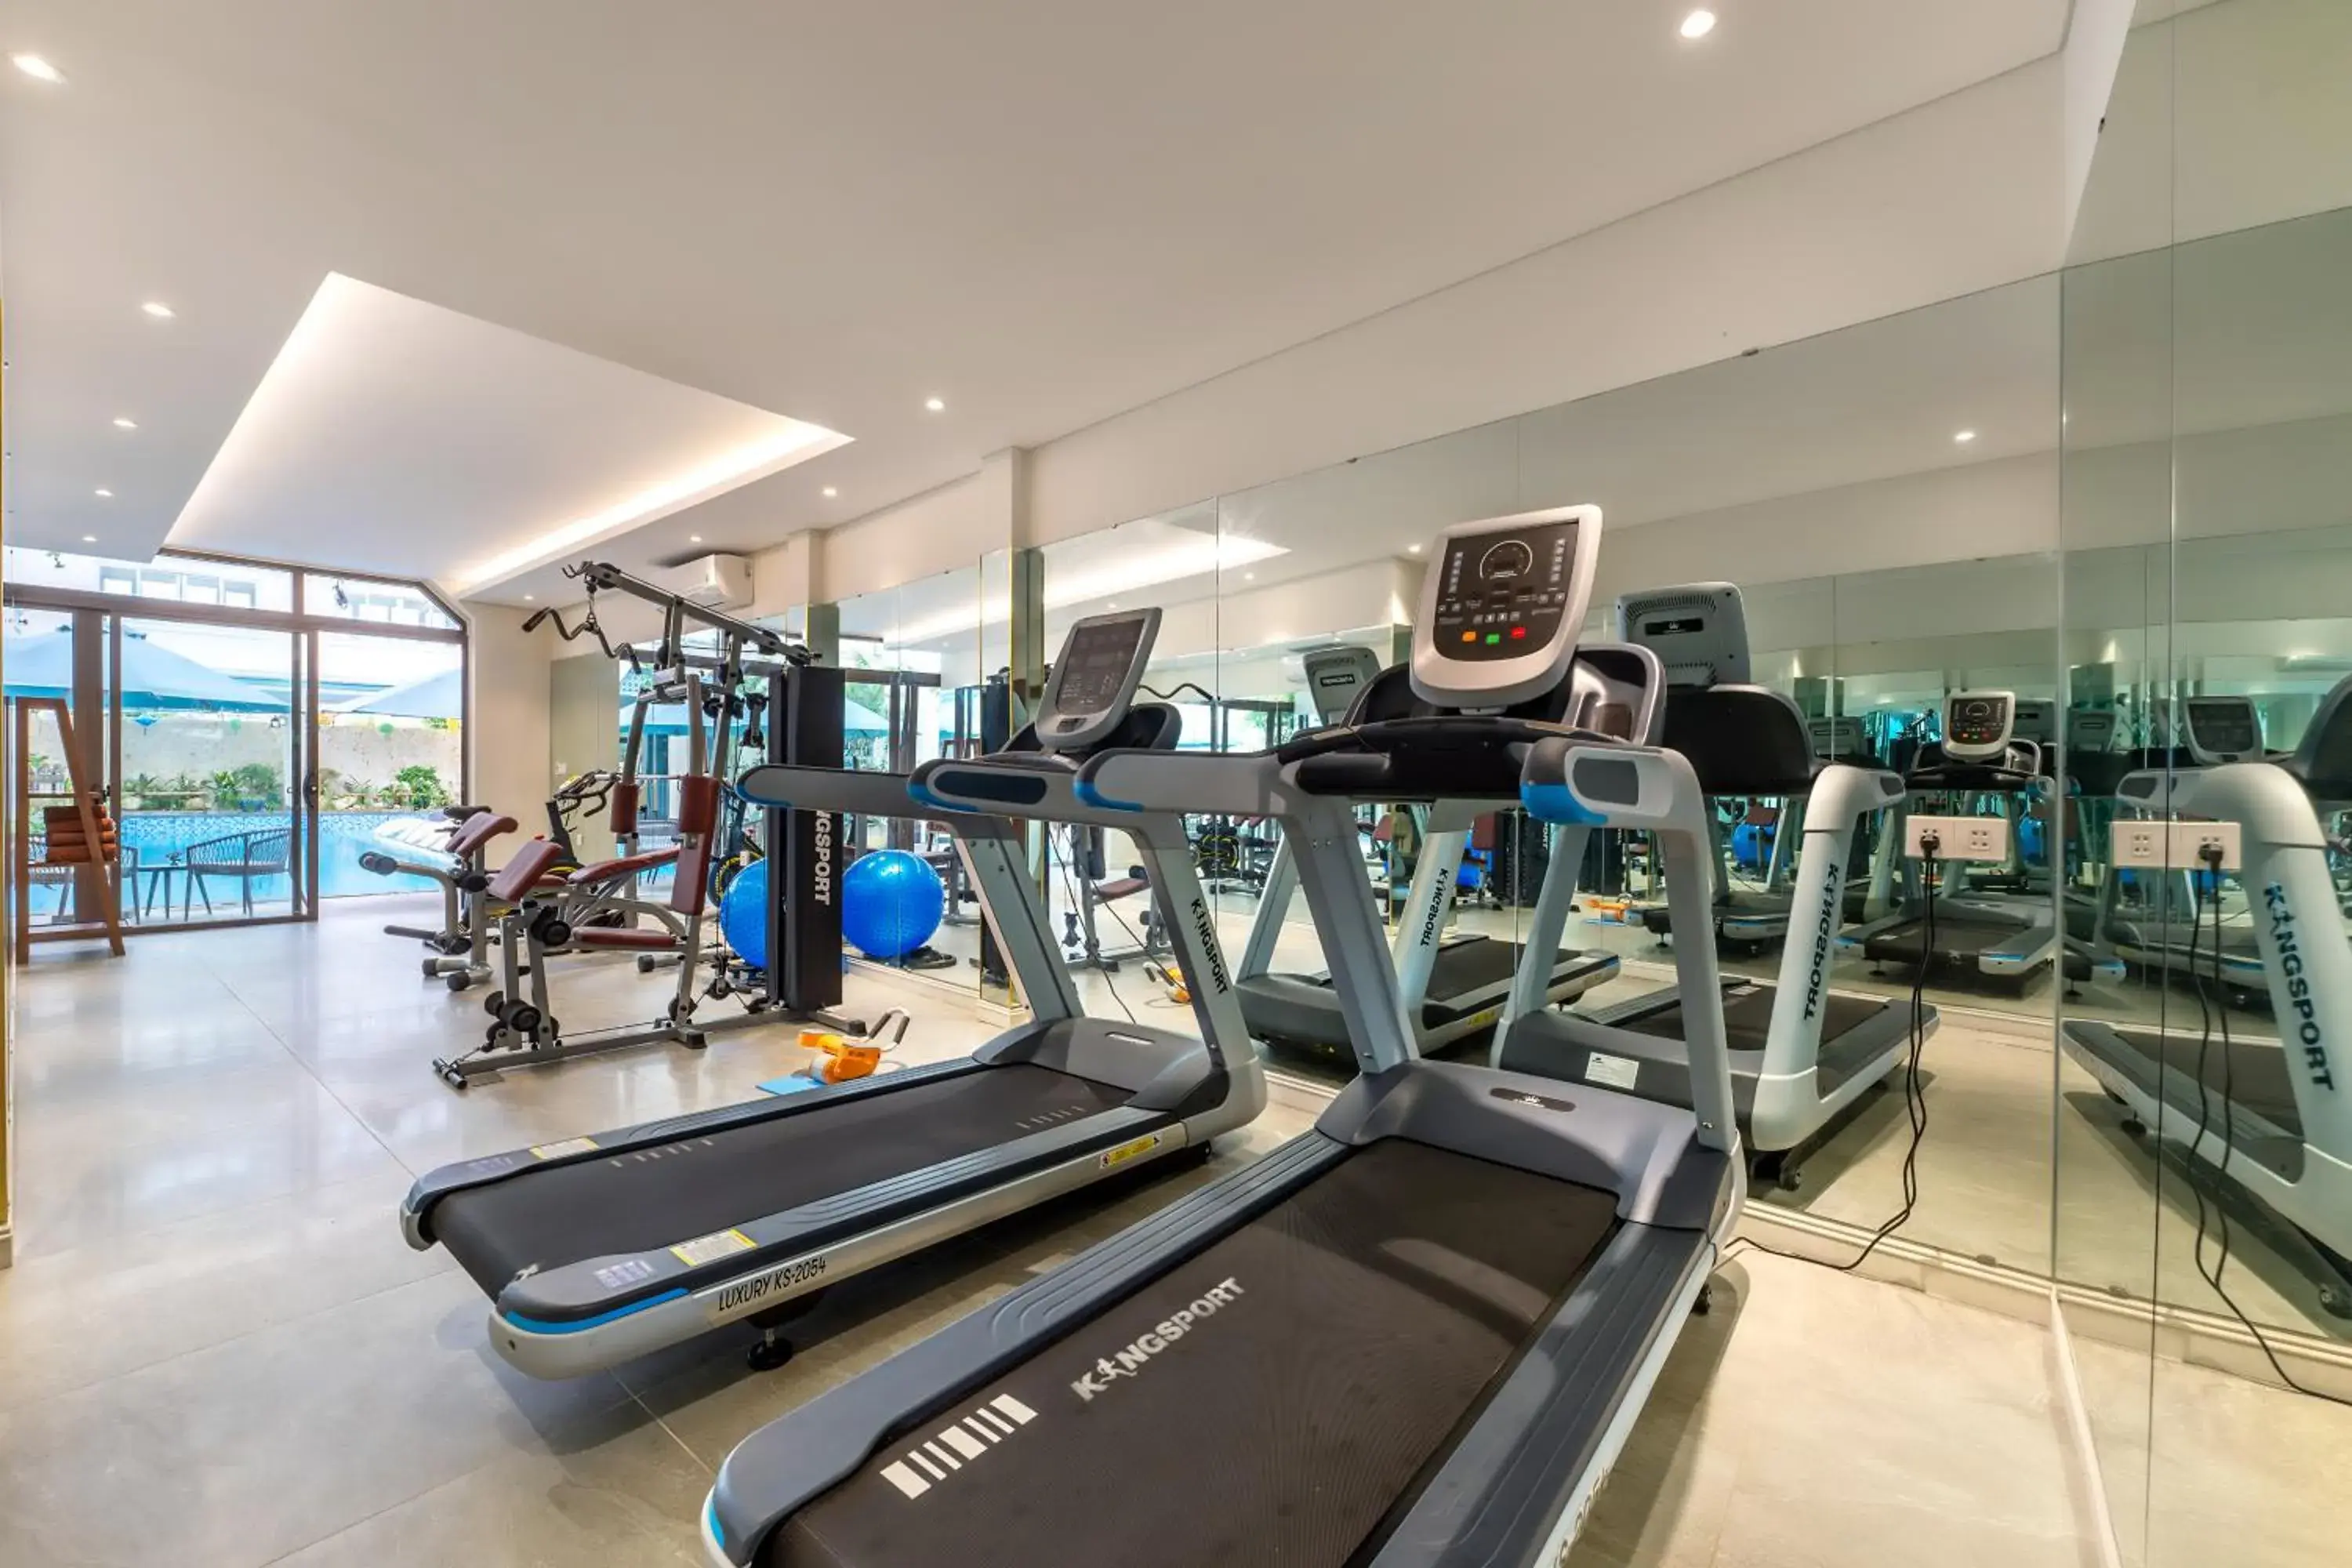 Fitness centre/facilities, Fitness Center/Facilities in Amina Lantana Hoi An Hotel & Spa